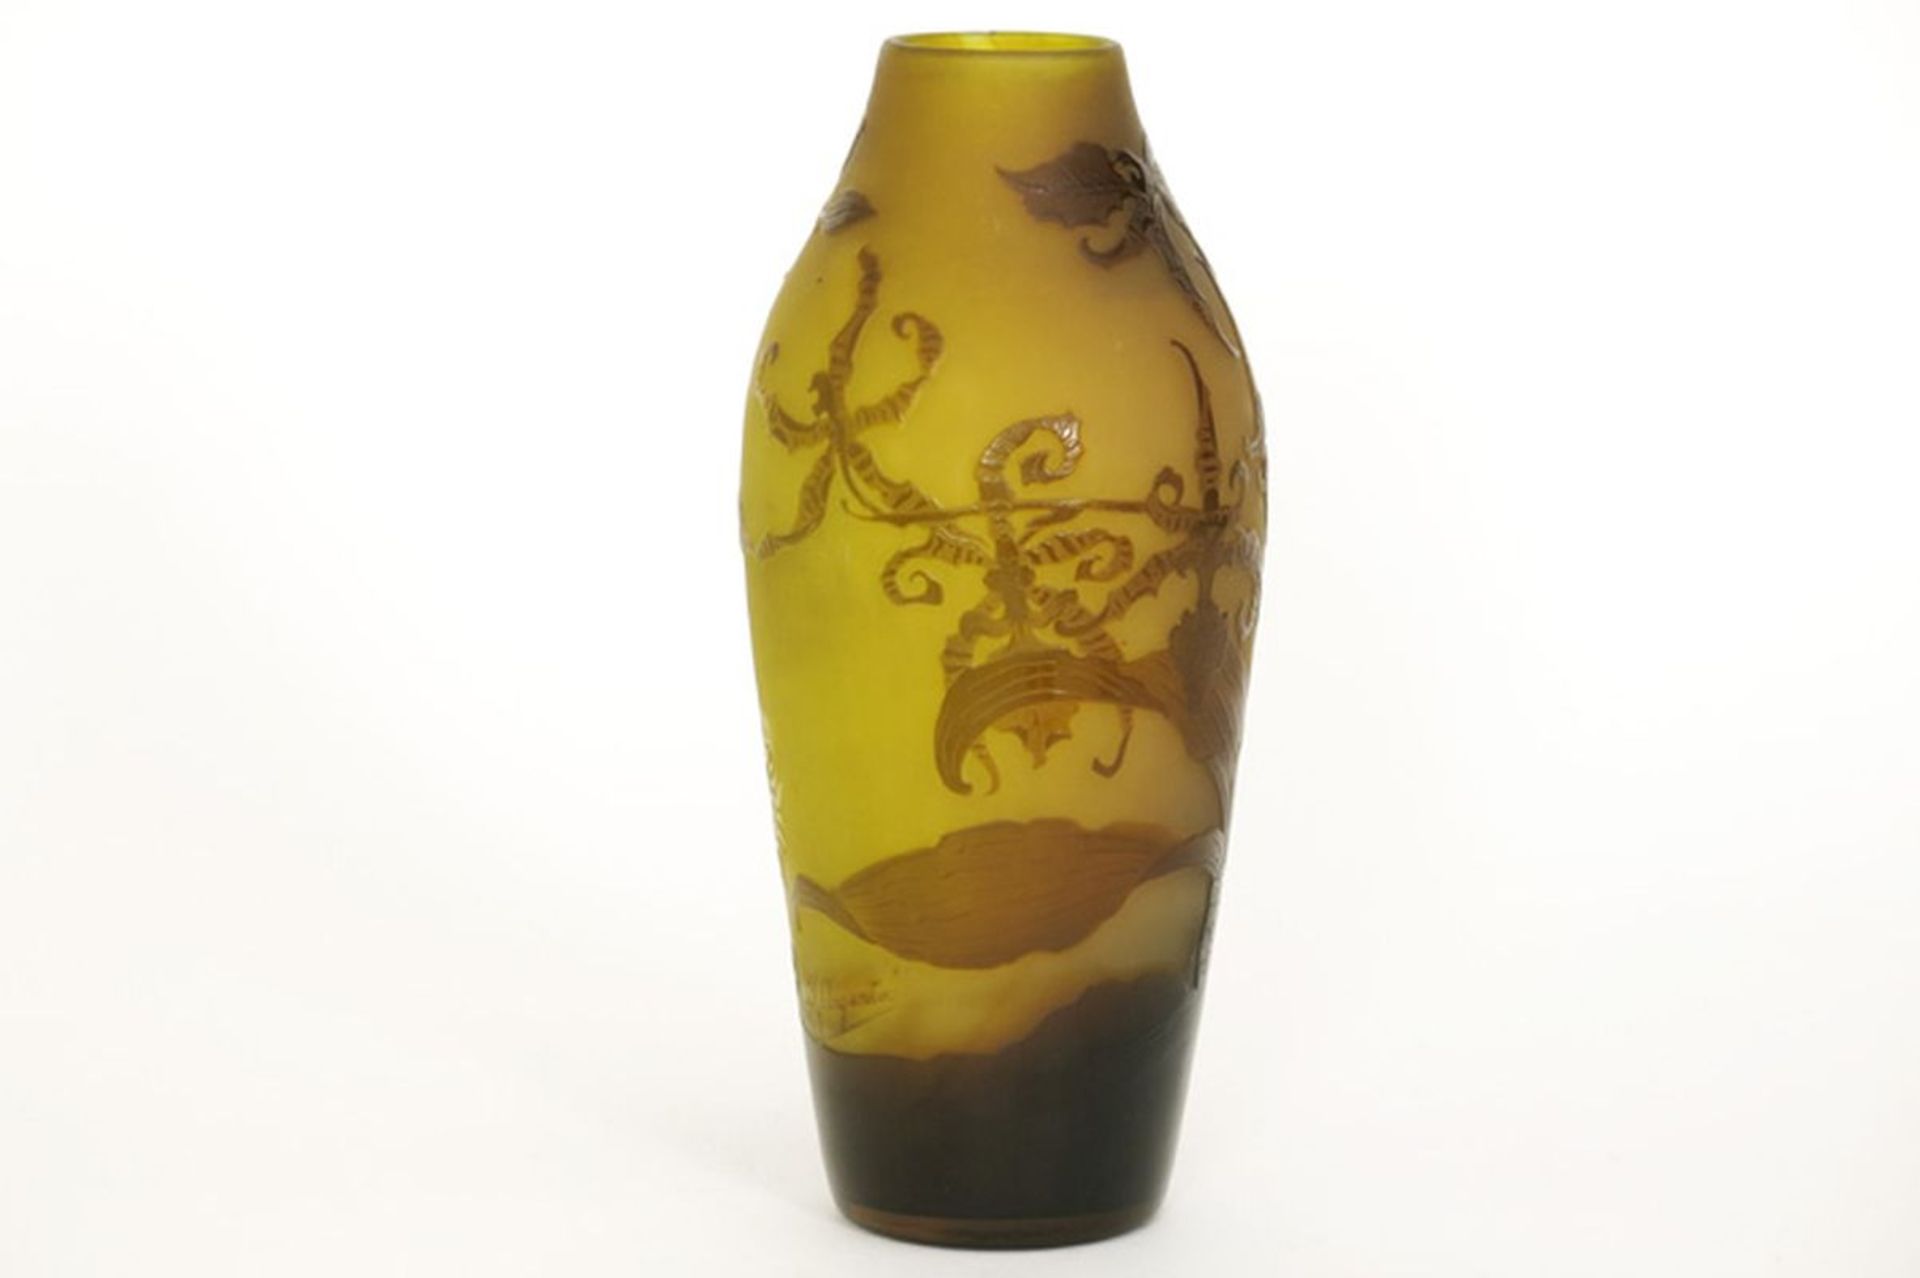 D'ARGENTAL kleine Art Nouveau-vaas in meerlagige cameo glaspasta met een floraal [...] - Bild 3 aus 5